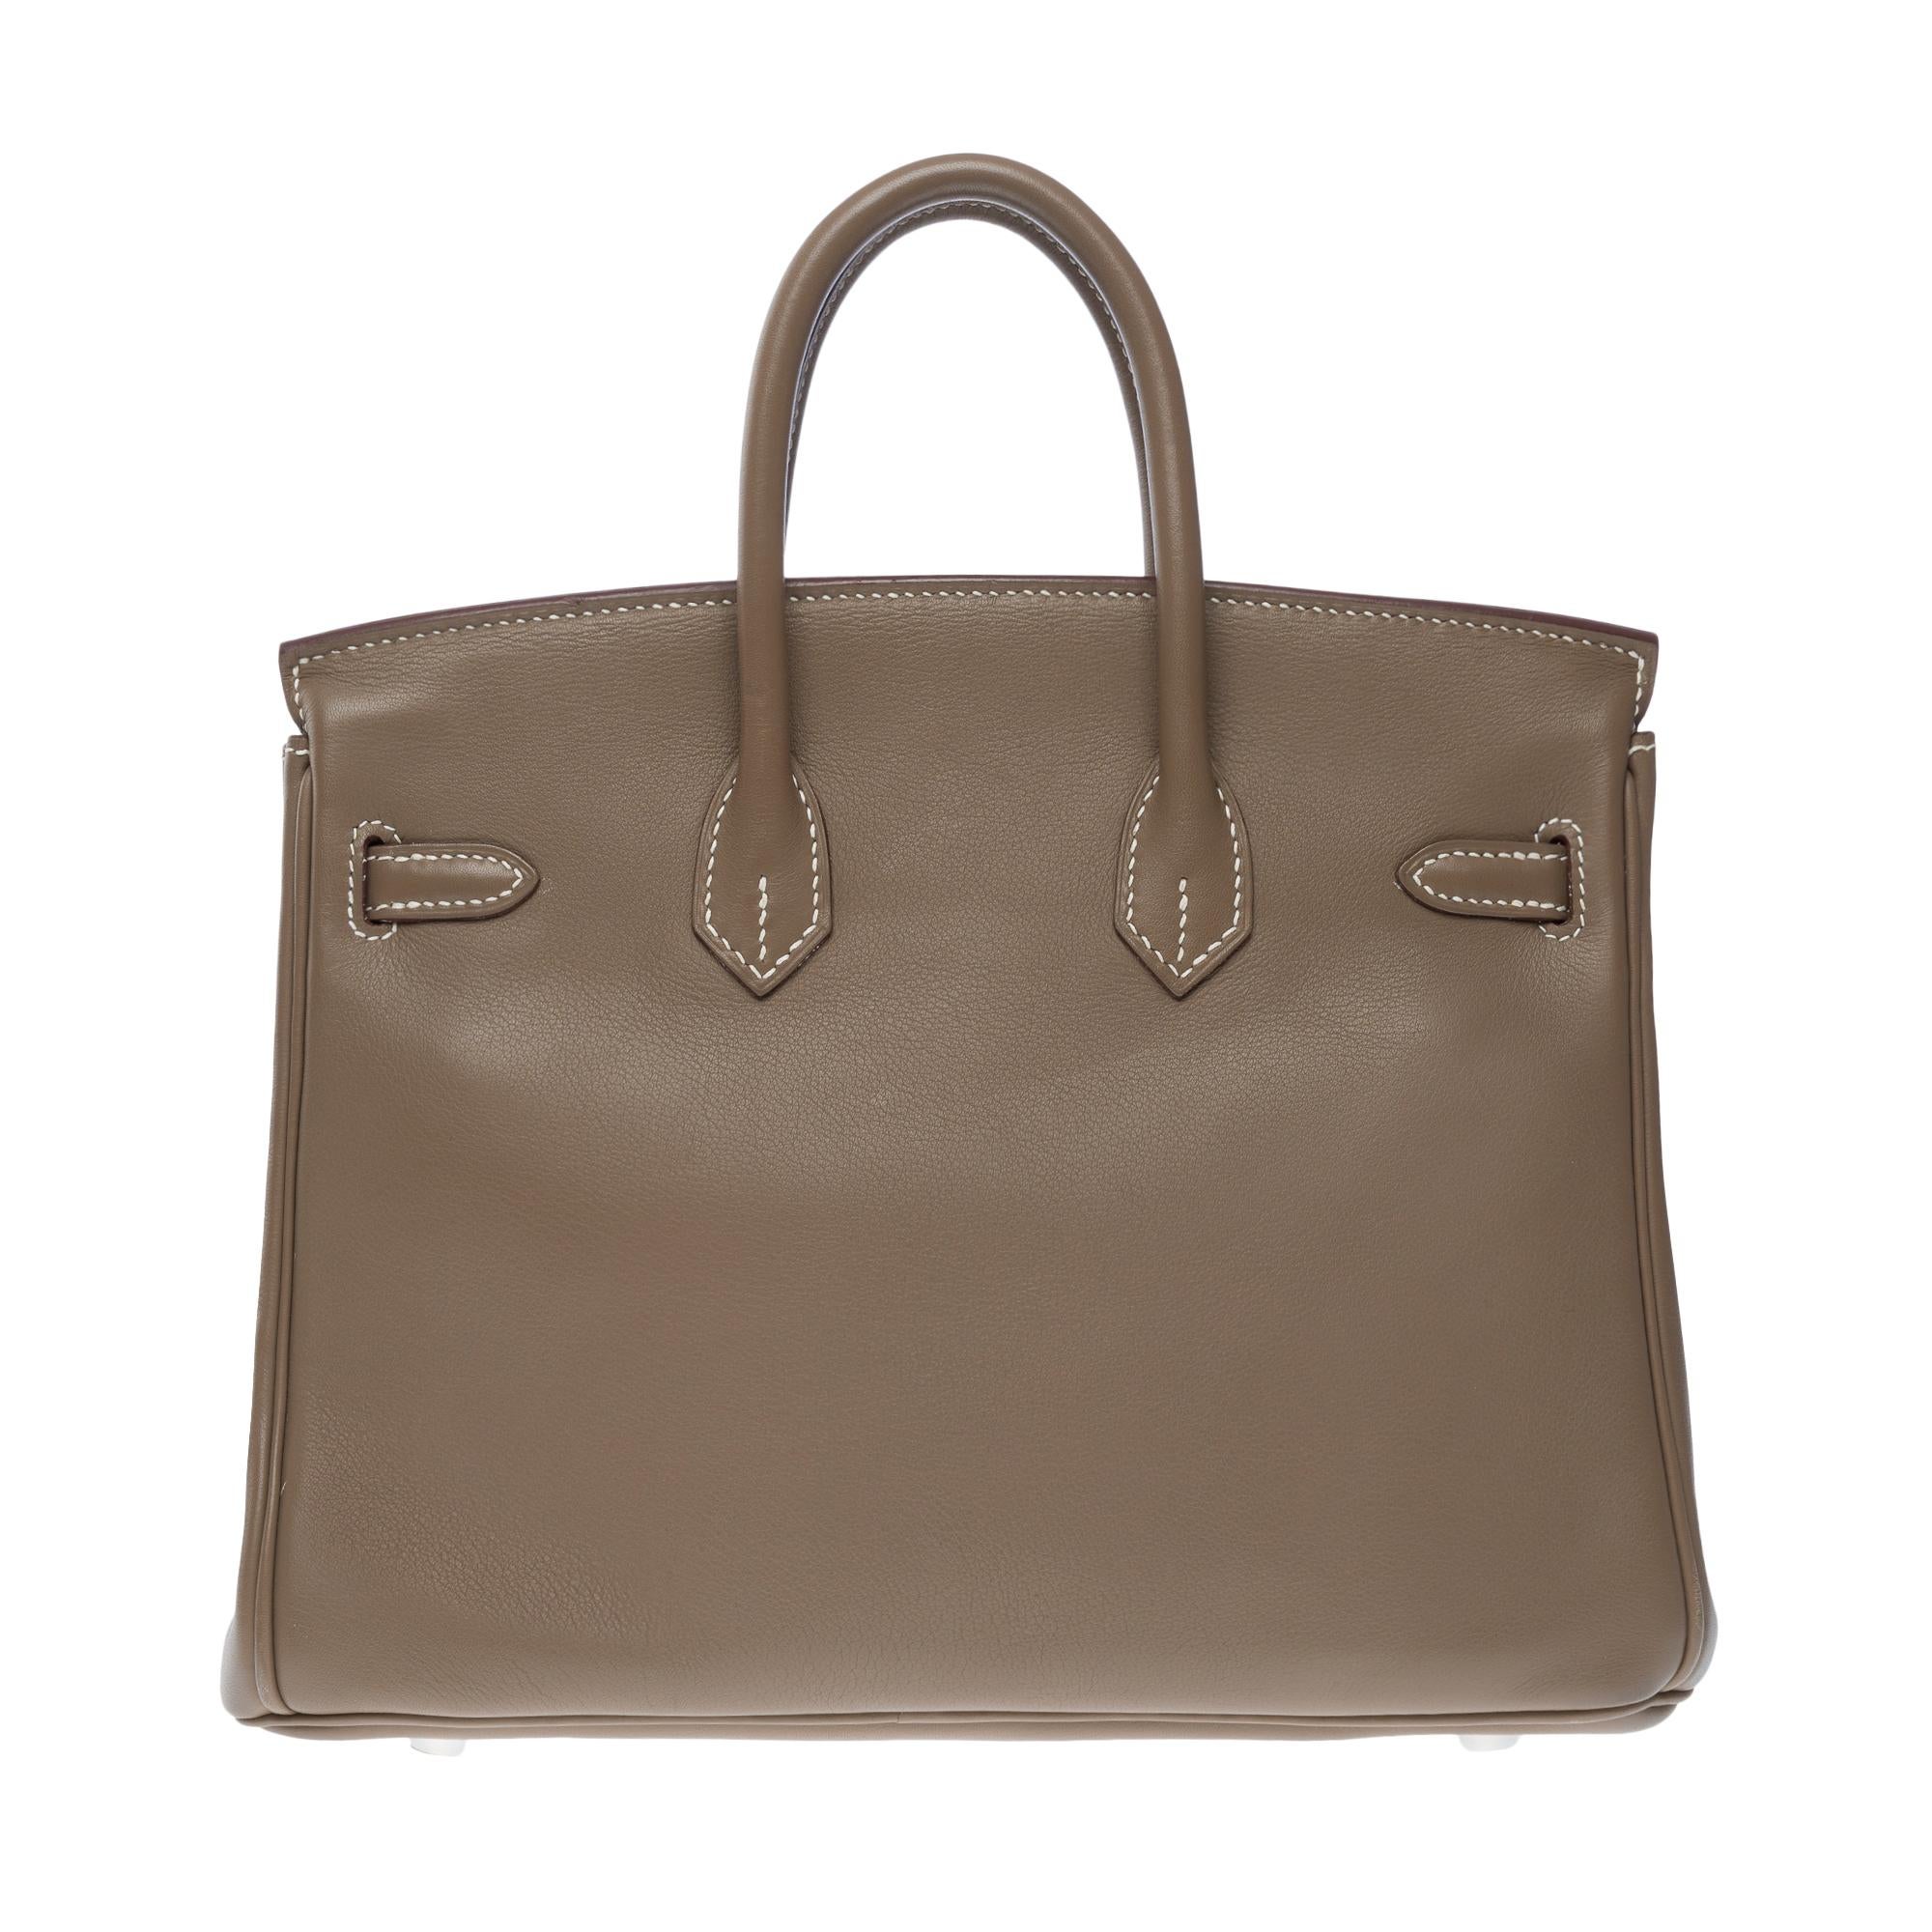 Women's Amazing Hermes Birkin 25cm handbag in Etoupe Swift Calf leather, SHW